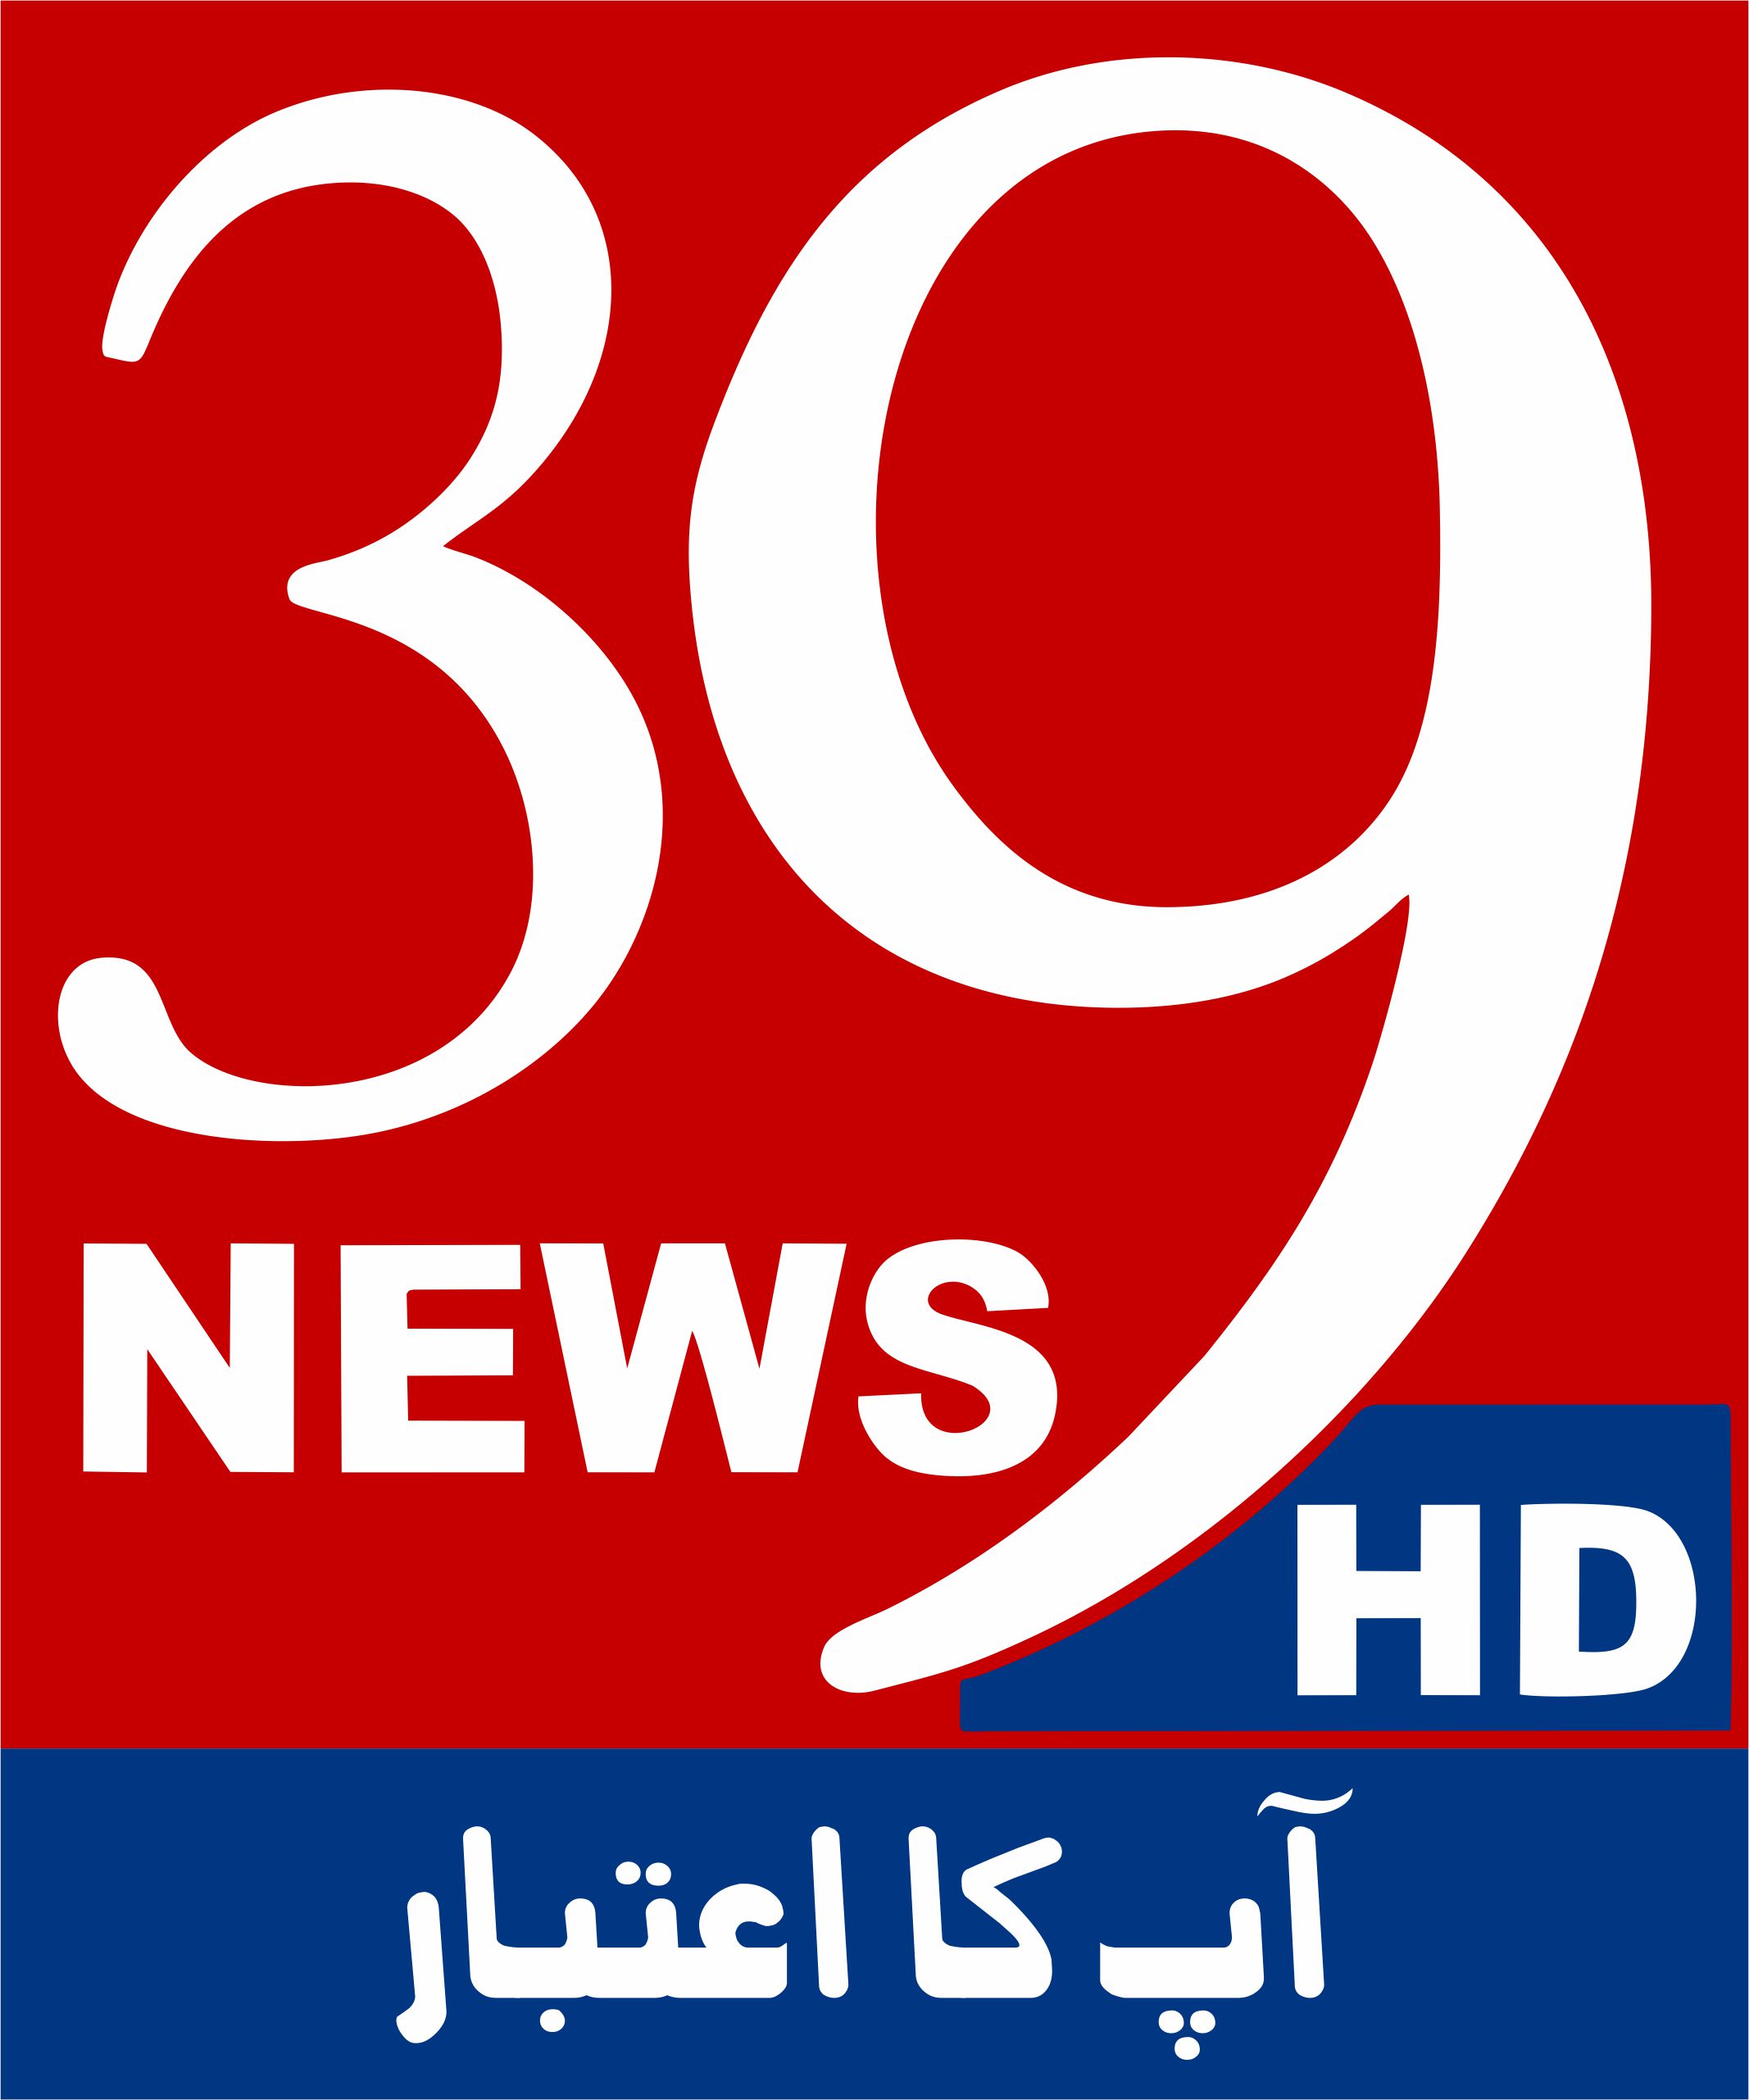 39 news hd